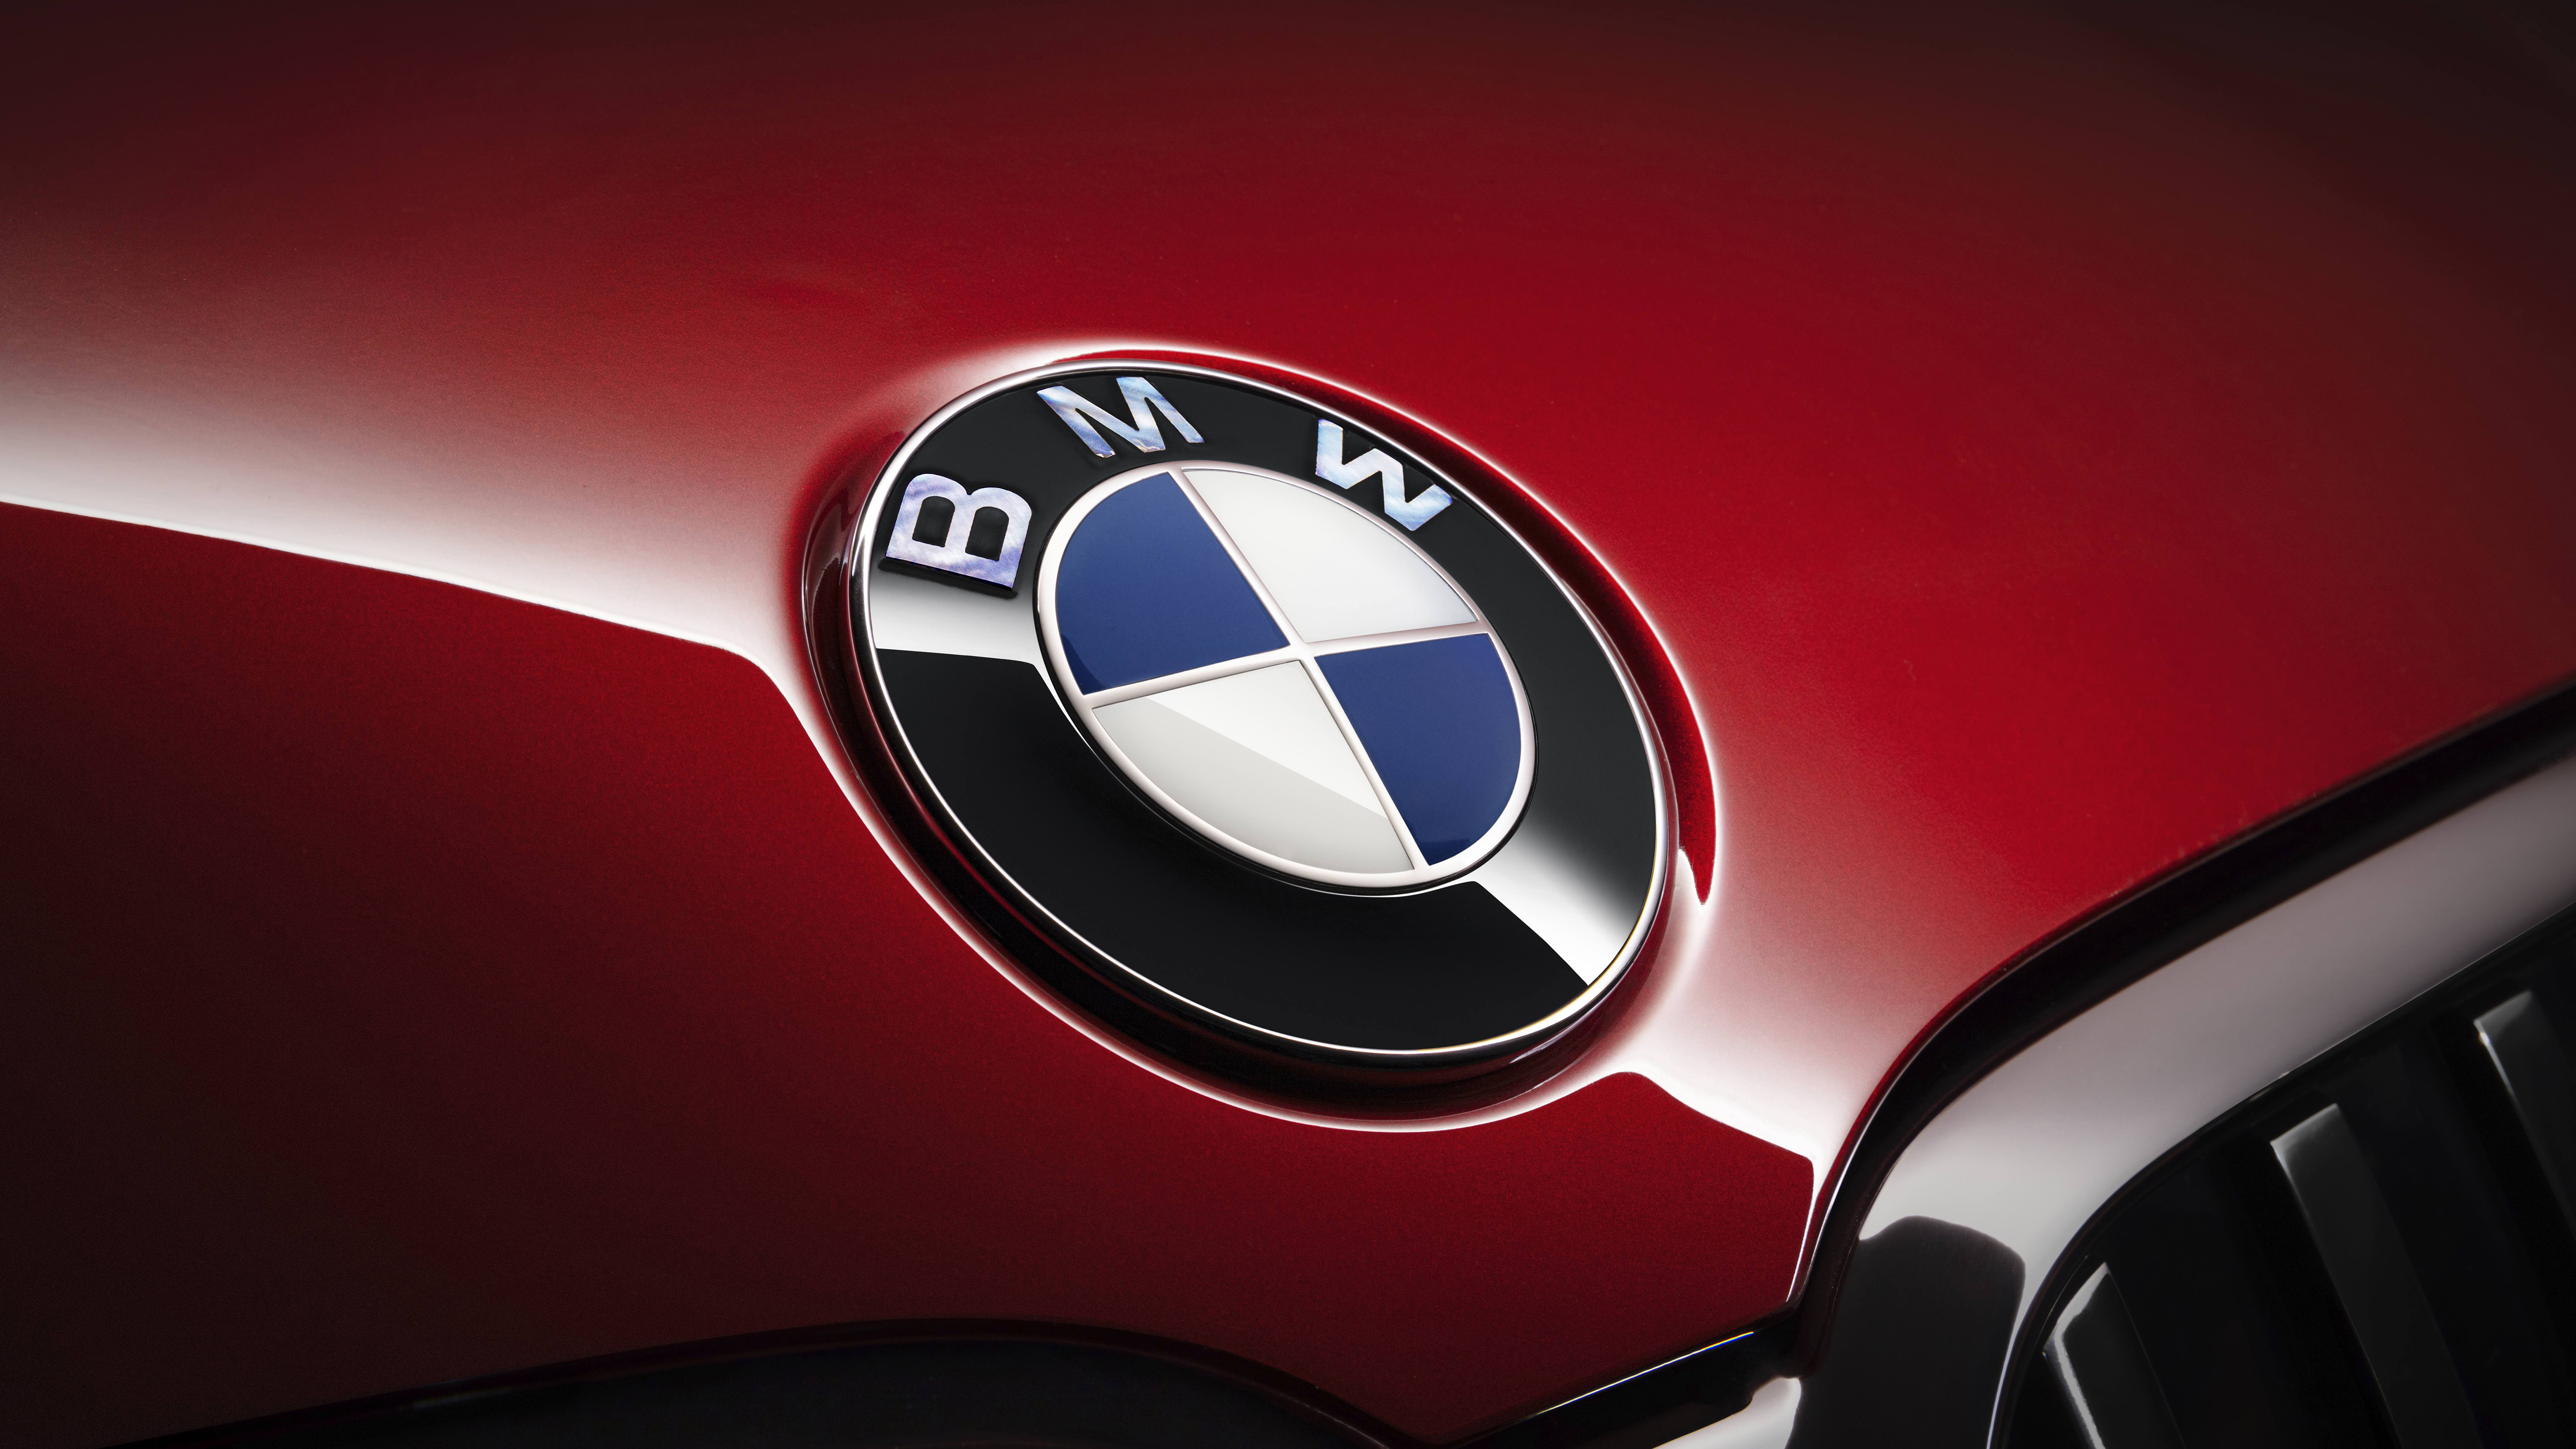 BMW logo Wallpaper 4K, BMW 7 Series, 5K